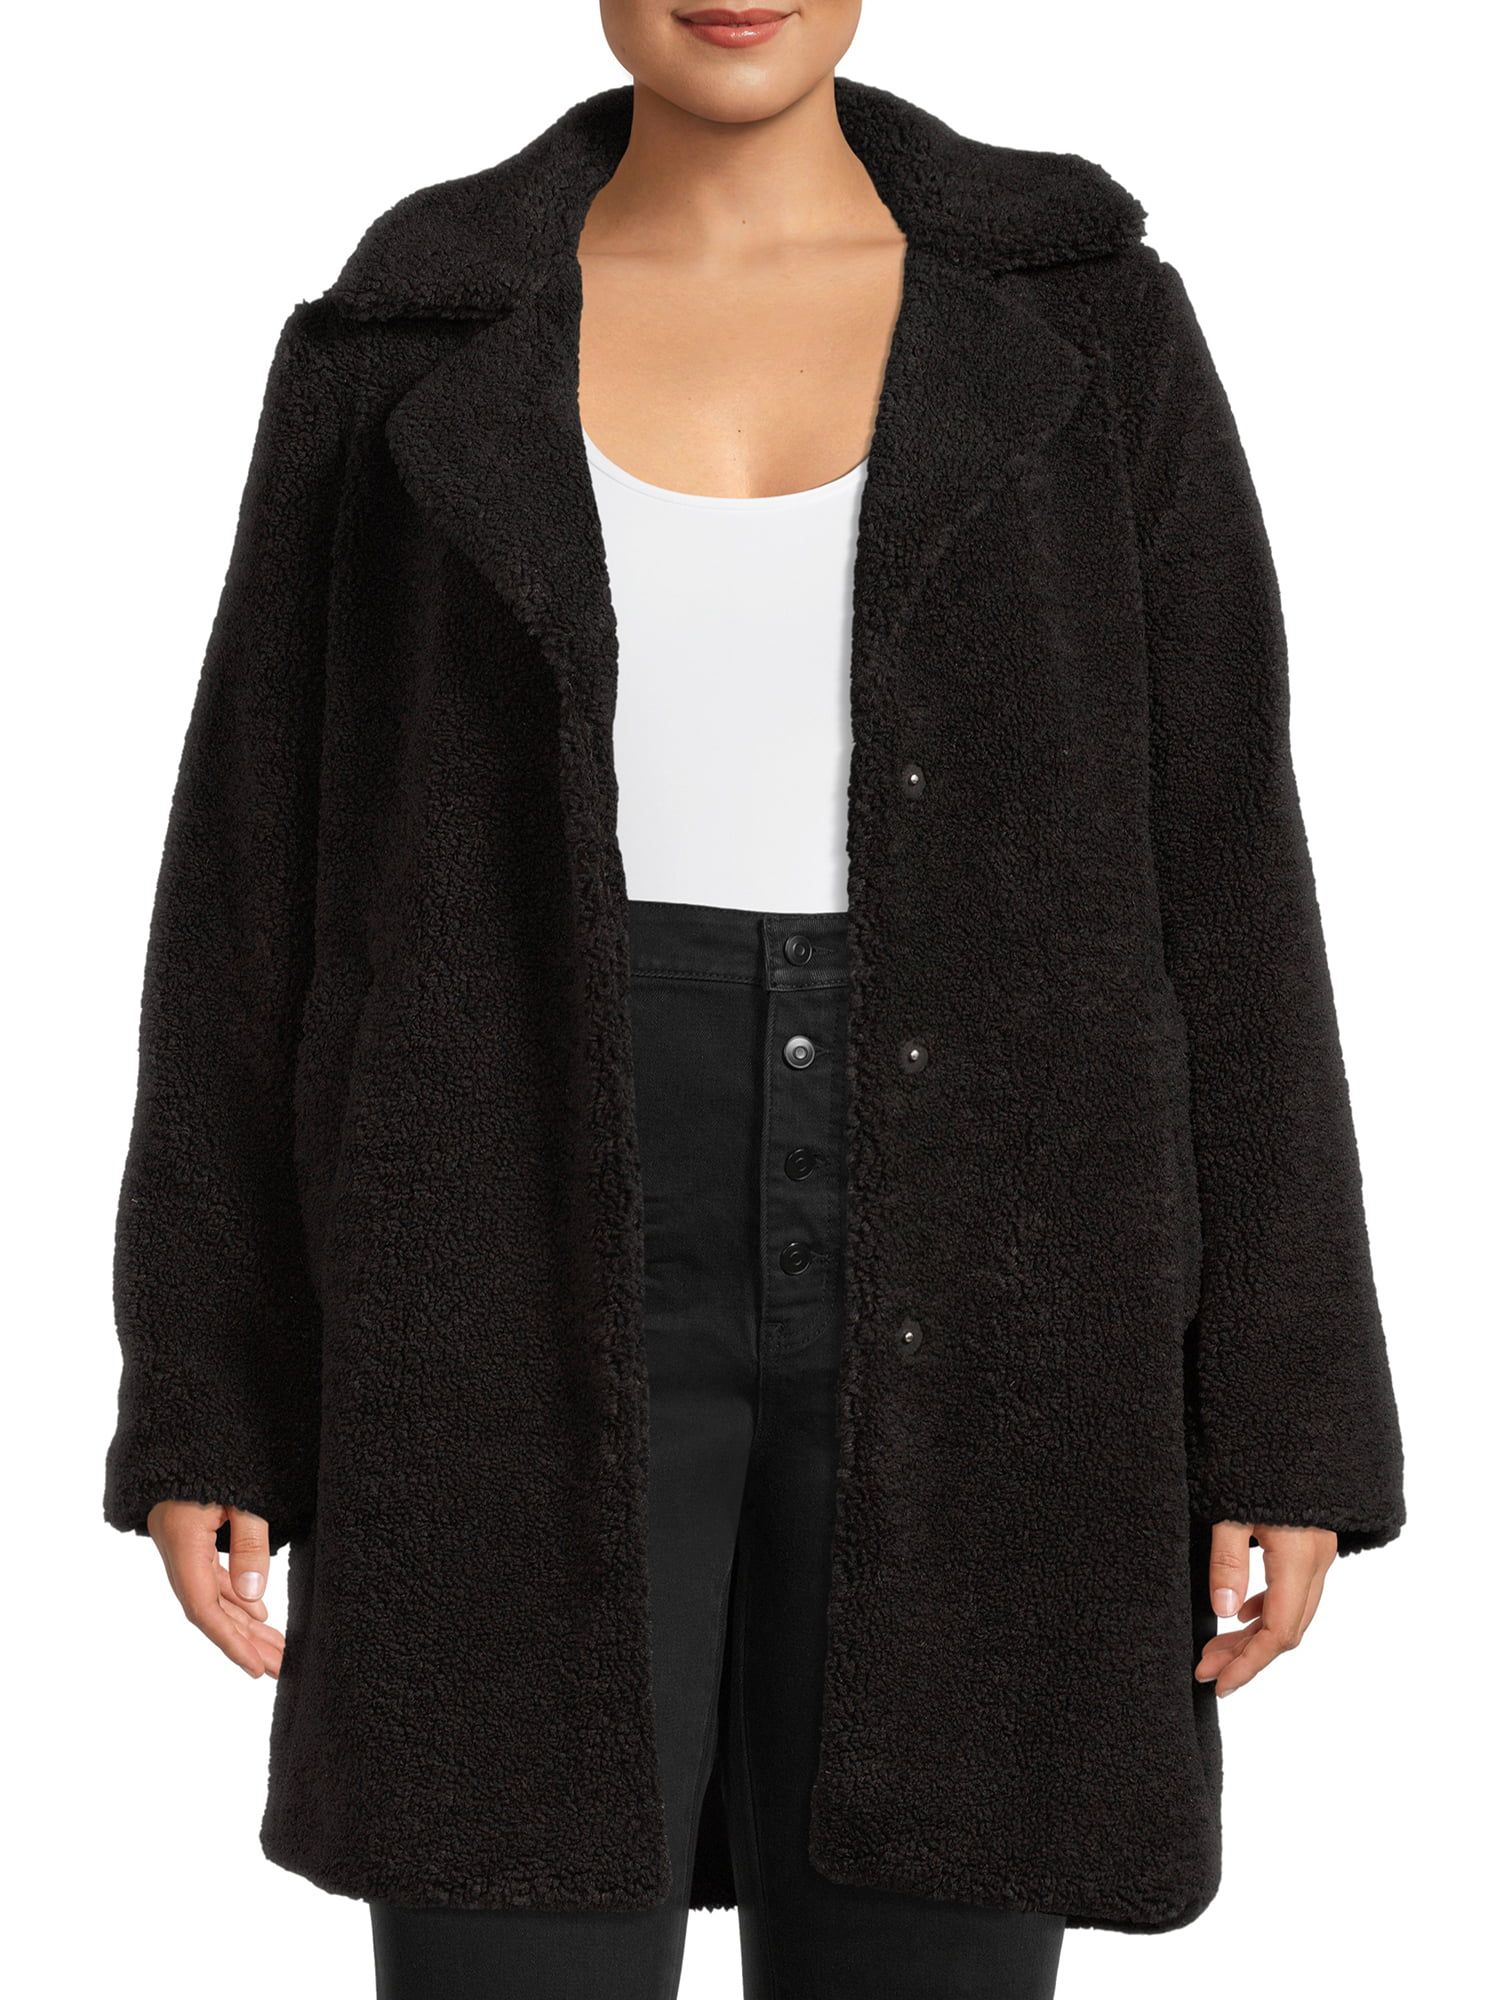 Mark Alan Women’s Plus Size Single-Breasted Faux Sherpa Coat | Walmart (US)